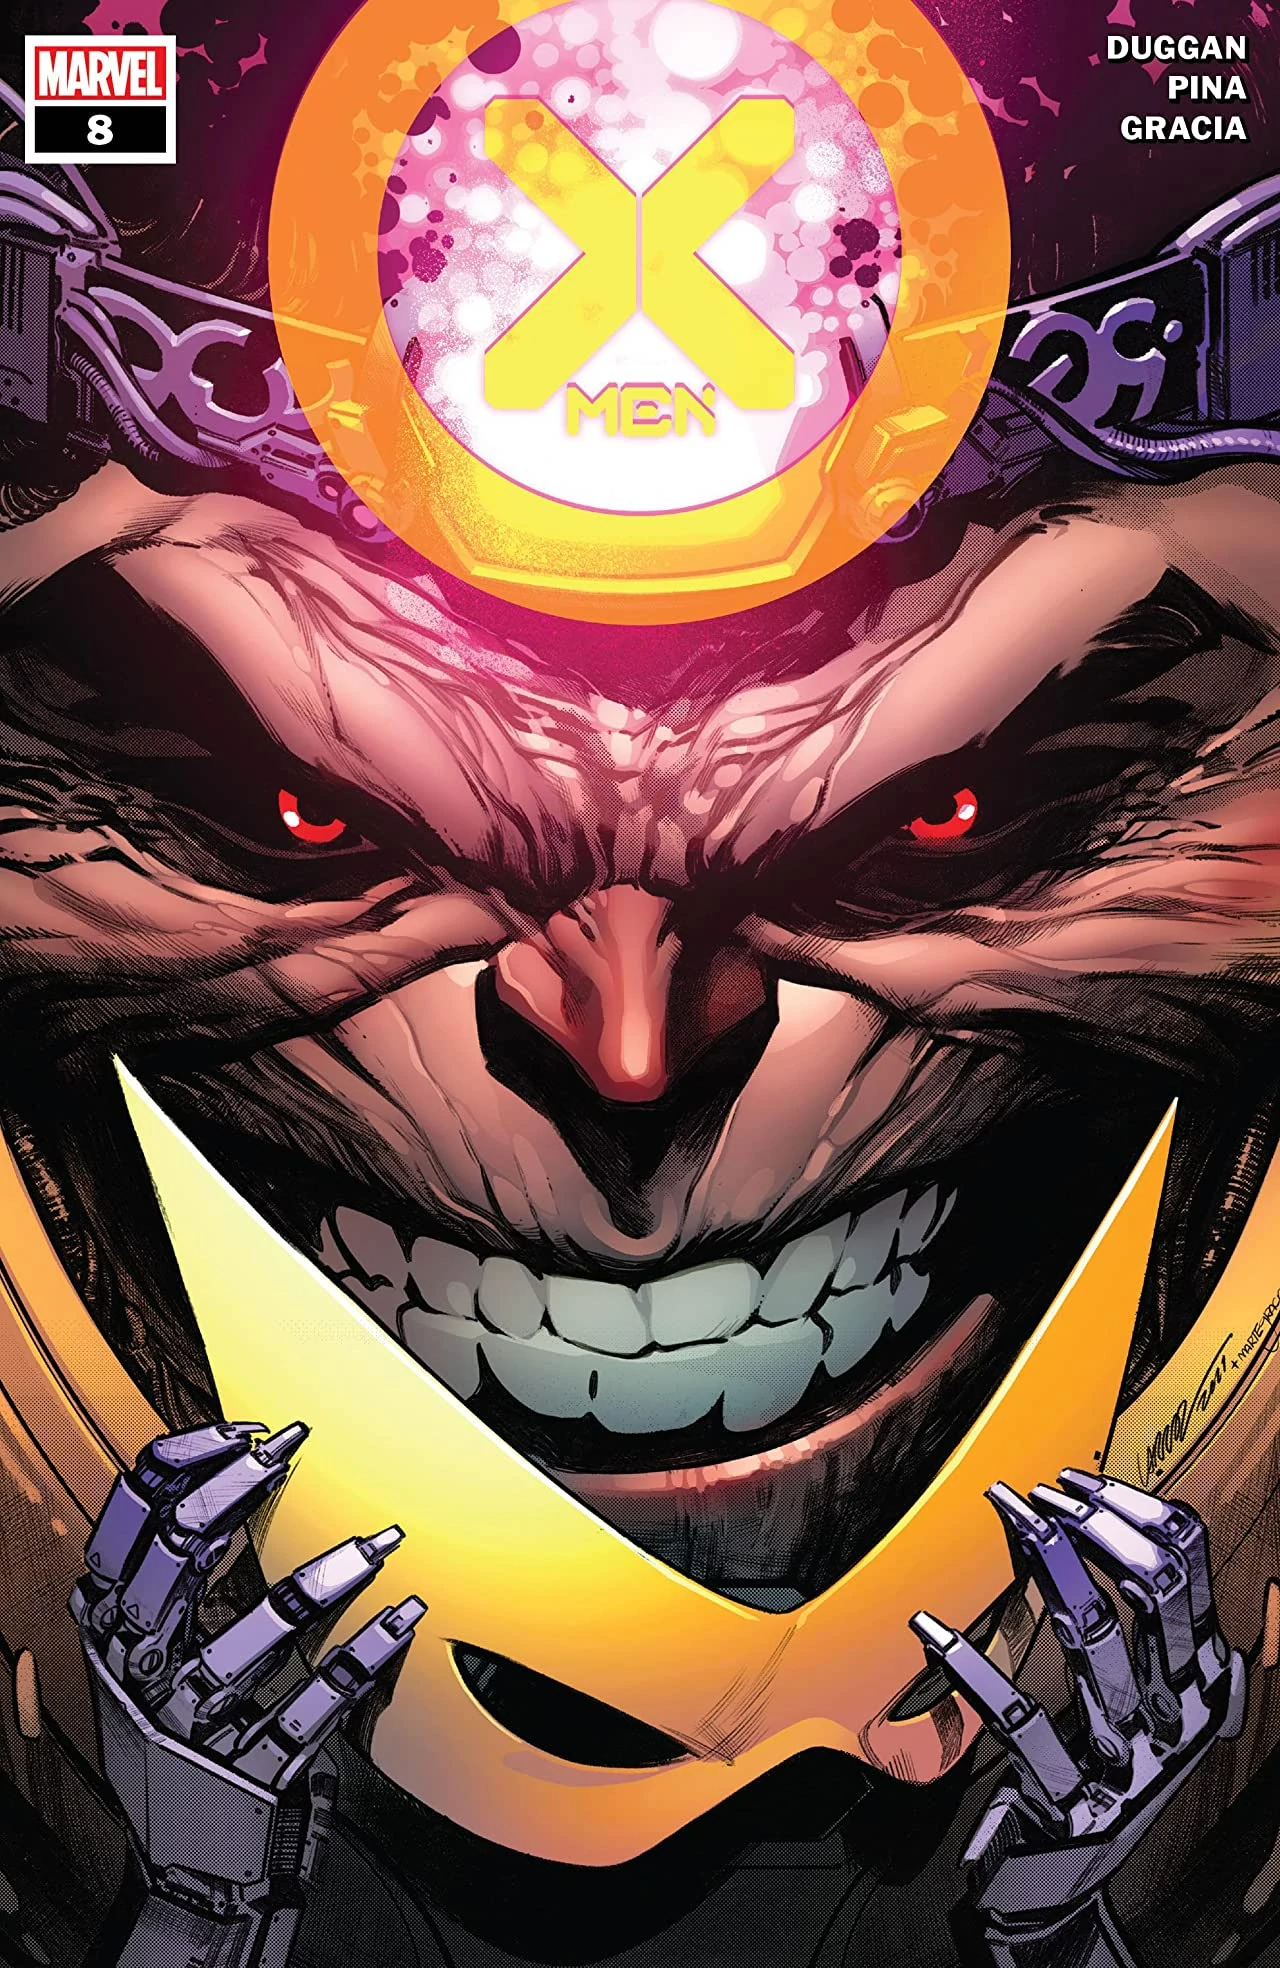 Cover di X-Men 8 di Pepe Larraz, tra le uscite Panini Marvel Italia di Maggio 2022